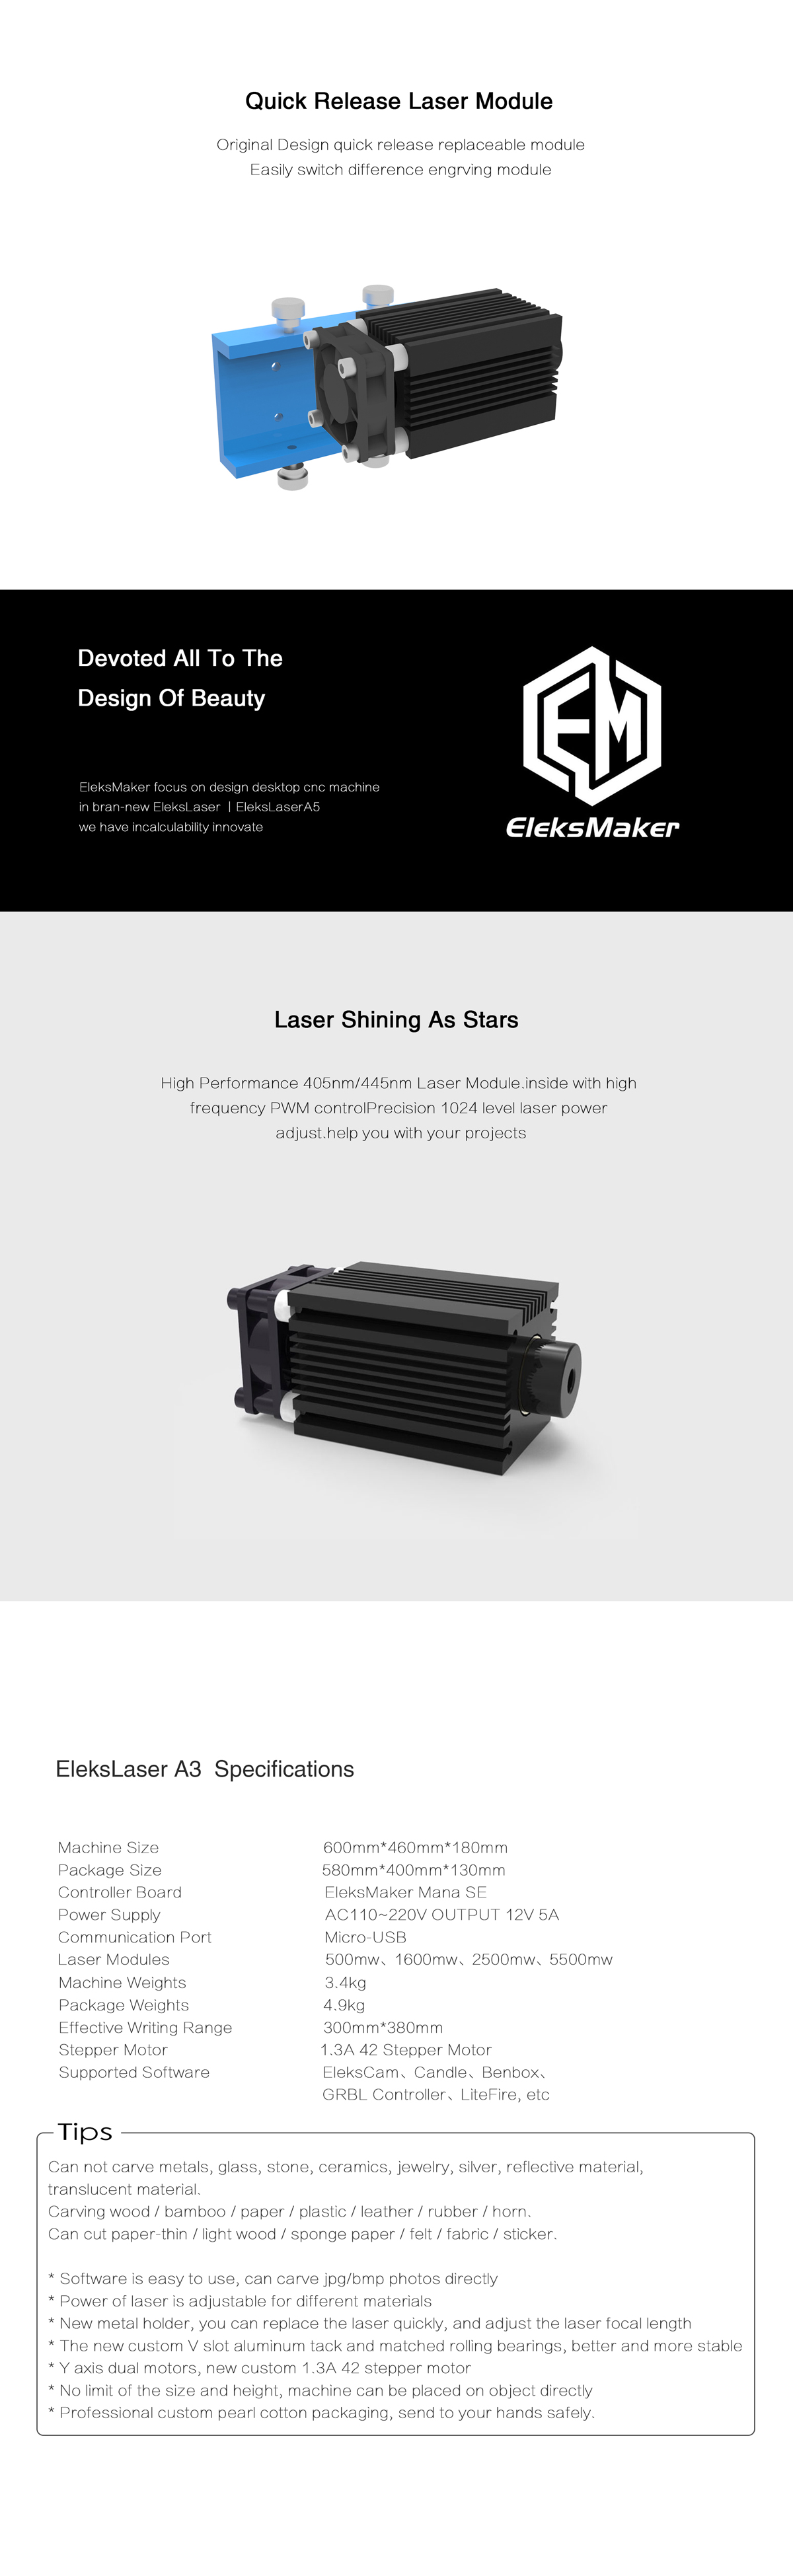 EleksMaker® EleksLaser-A3 Pro 1600mW Laser Engraving Machine CNC Laser Printer